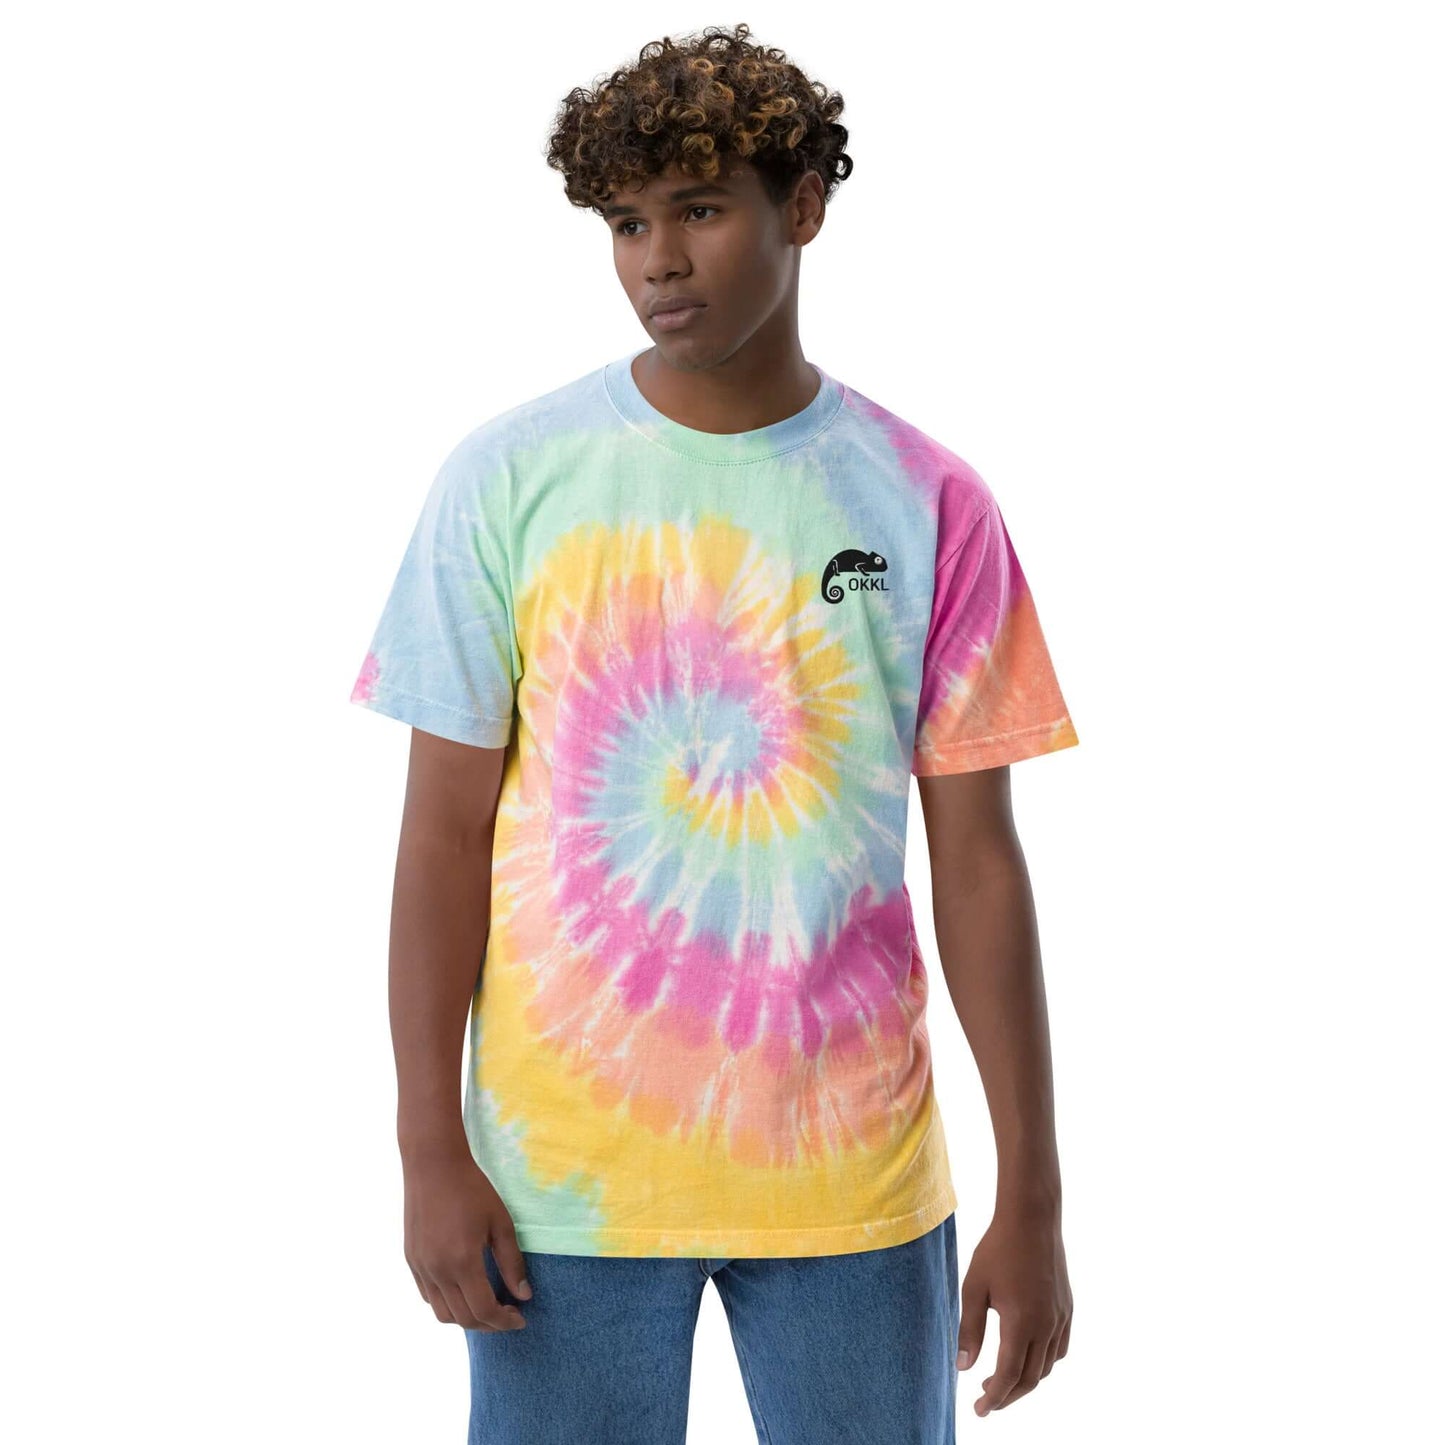 OKKL Chameleon: Oversized tie-dye t-shirt